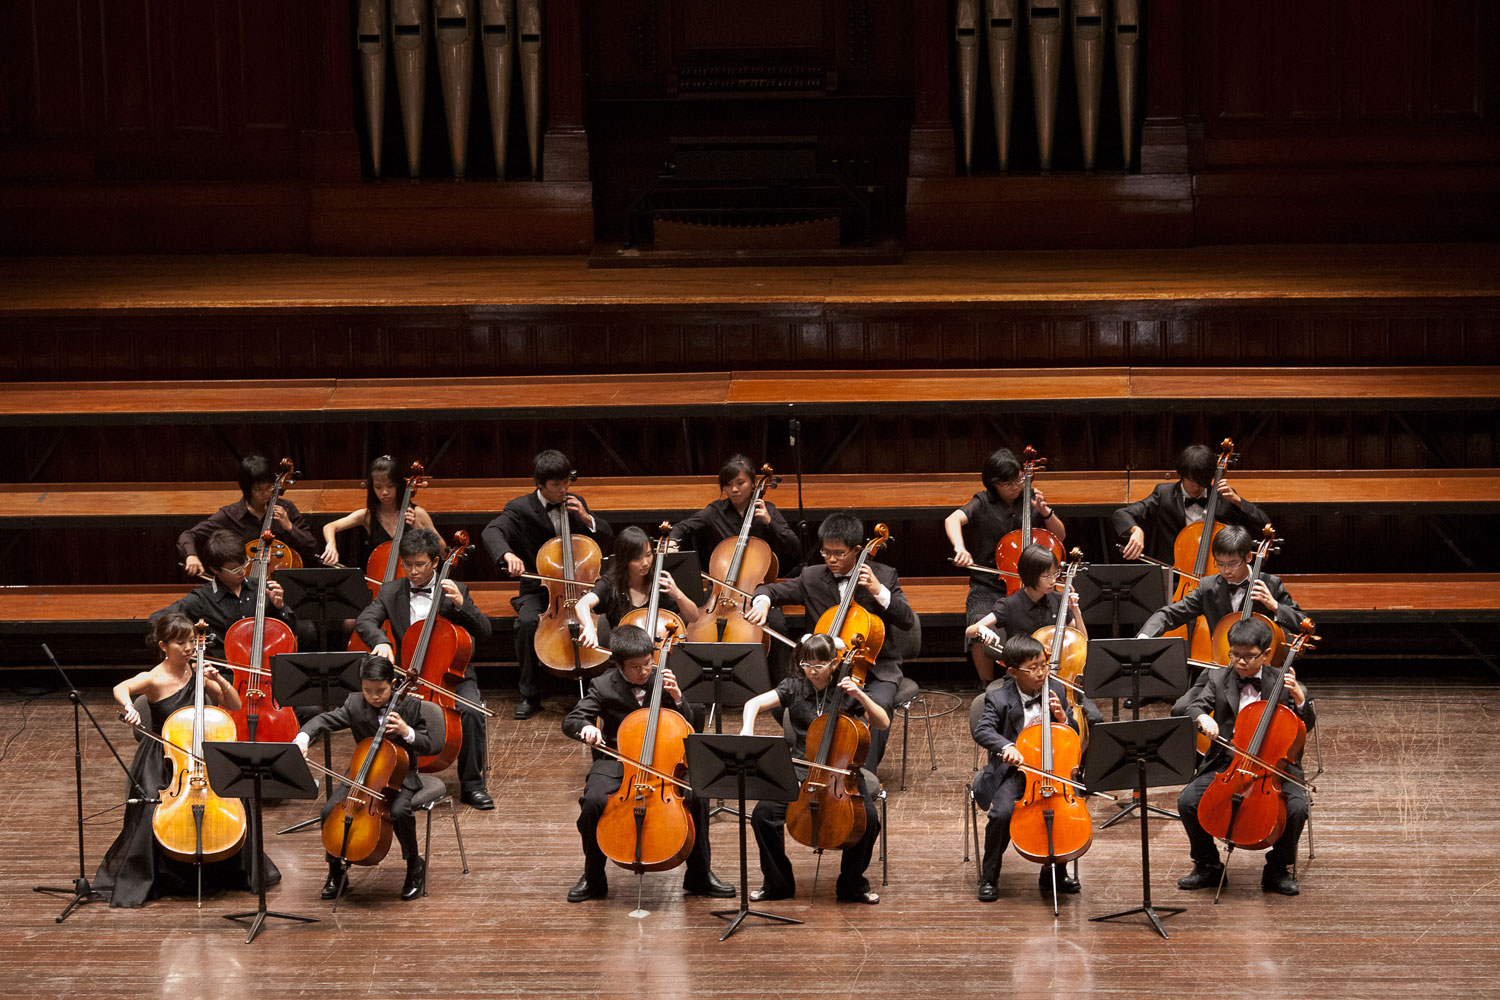 Cello Ensemble Victoria Concert Hall